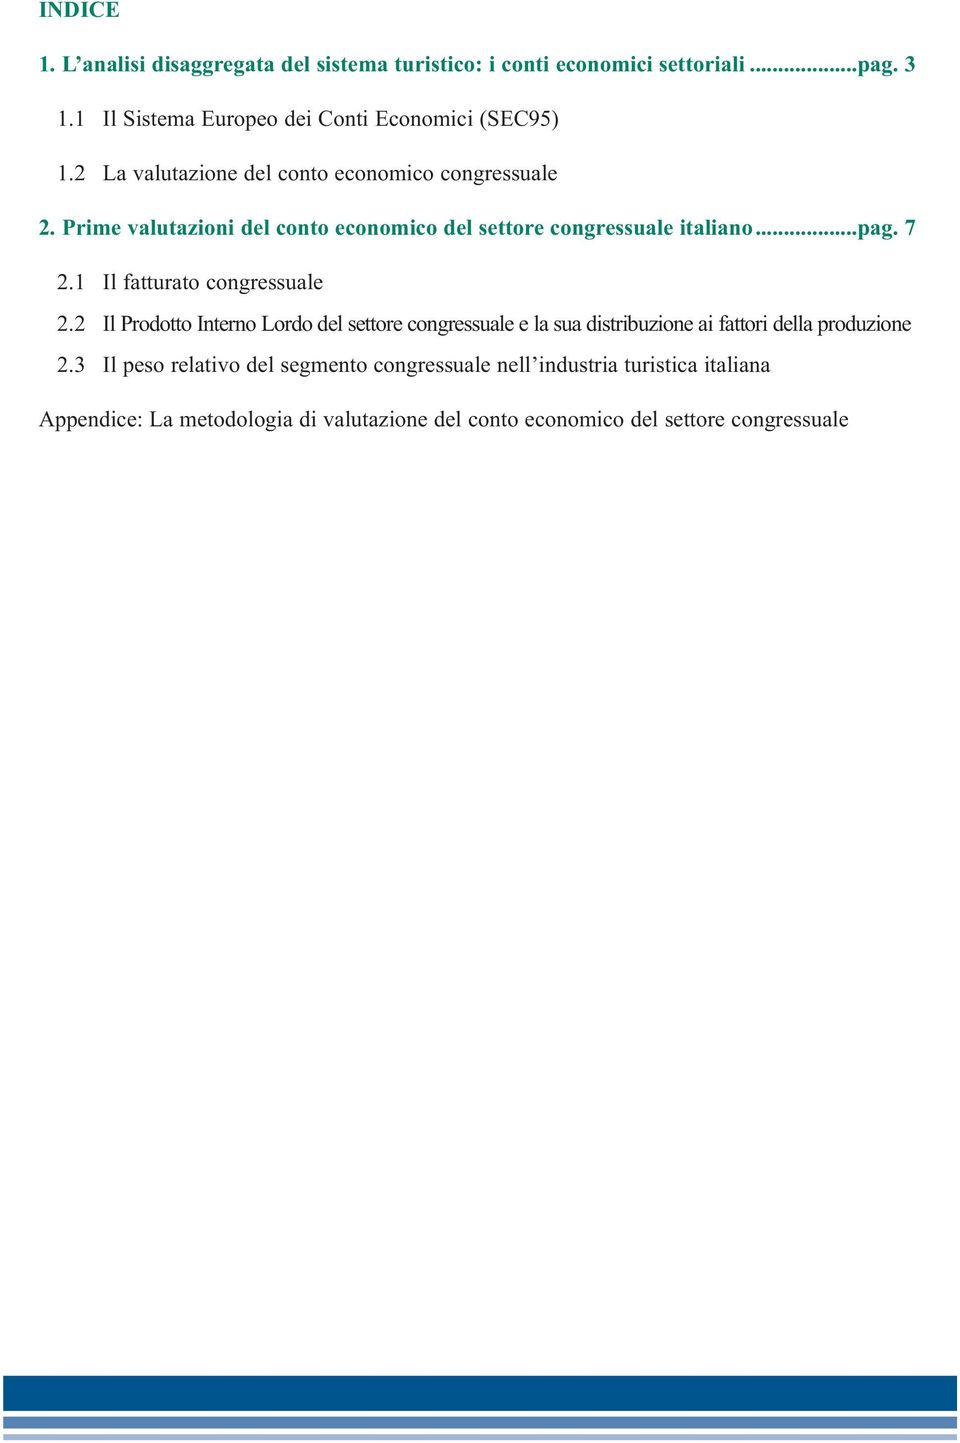 Prime valutazioni del conto economico del settore congressuale italiano...pag. 7 2.1 Il fatturato congressuale 2.